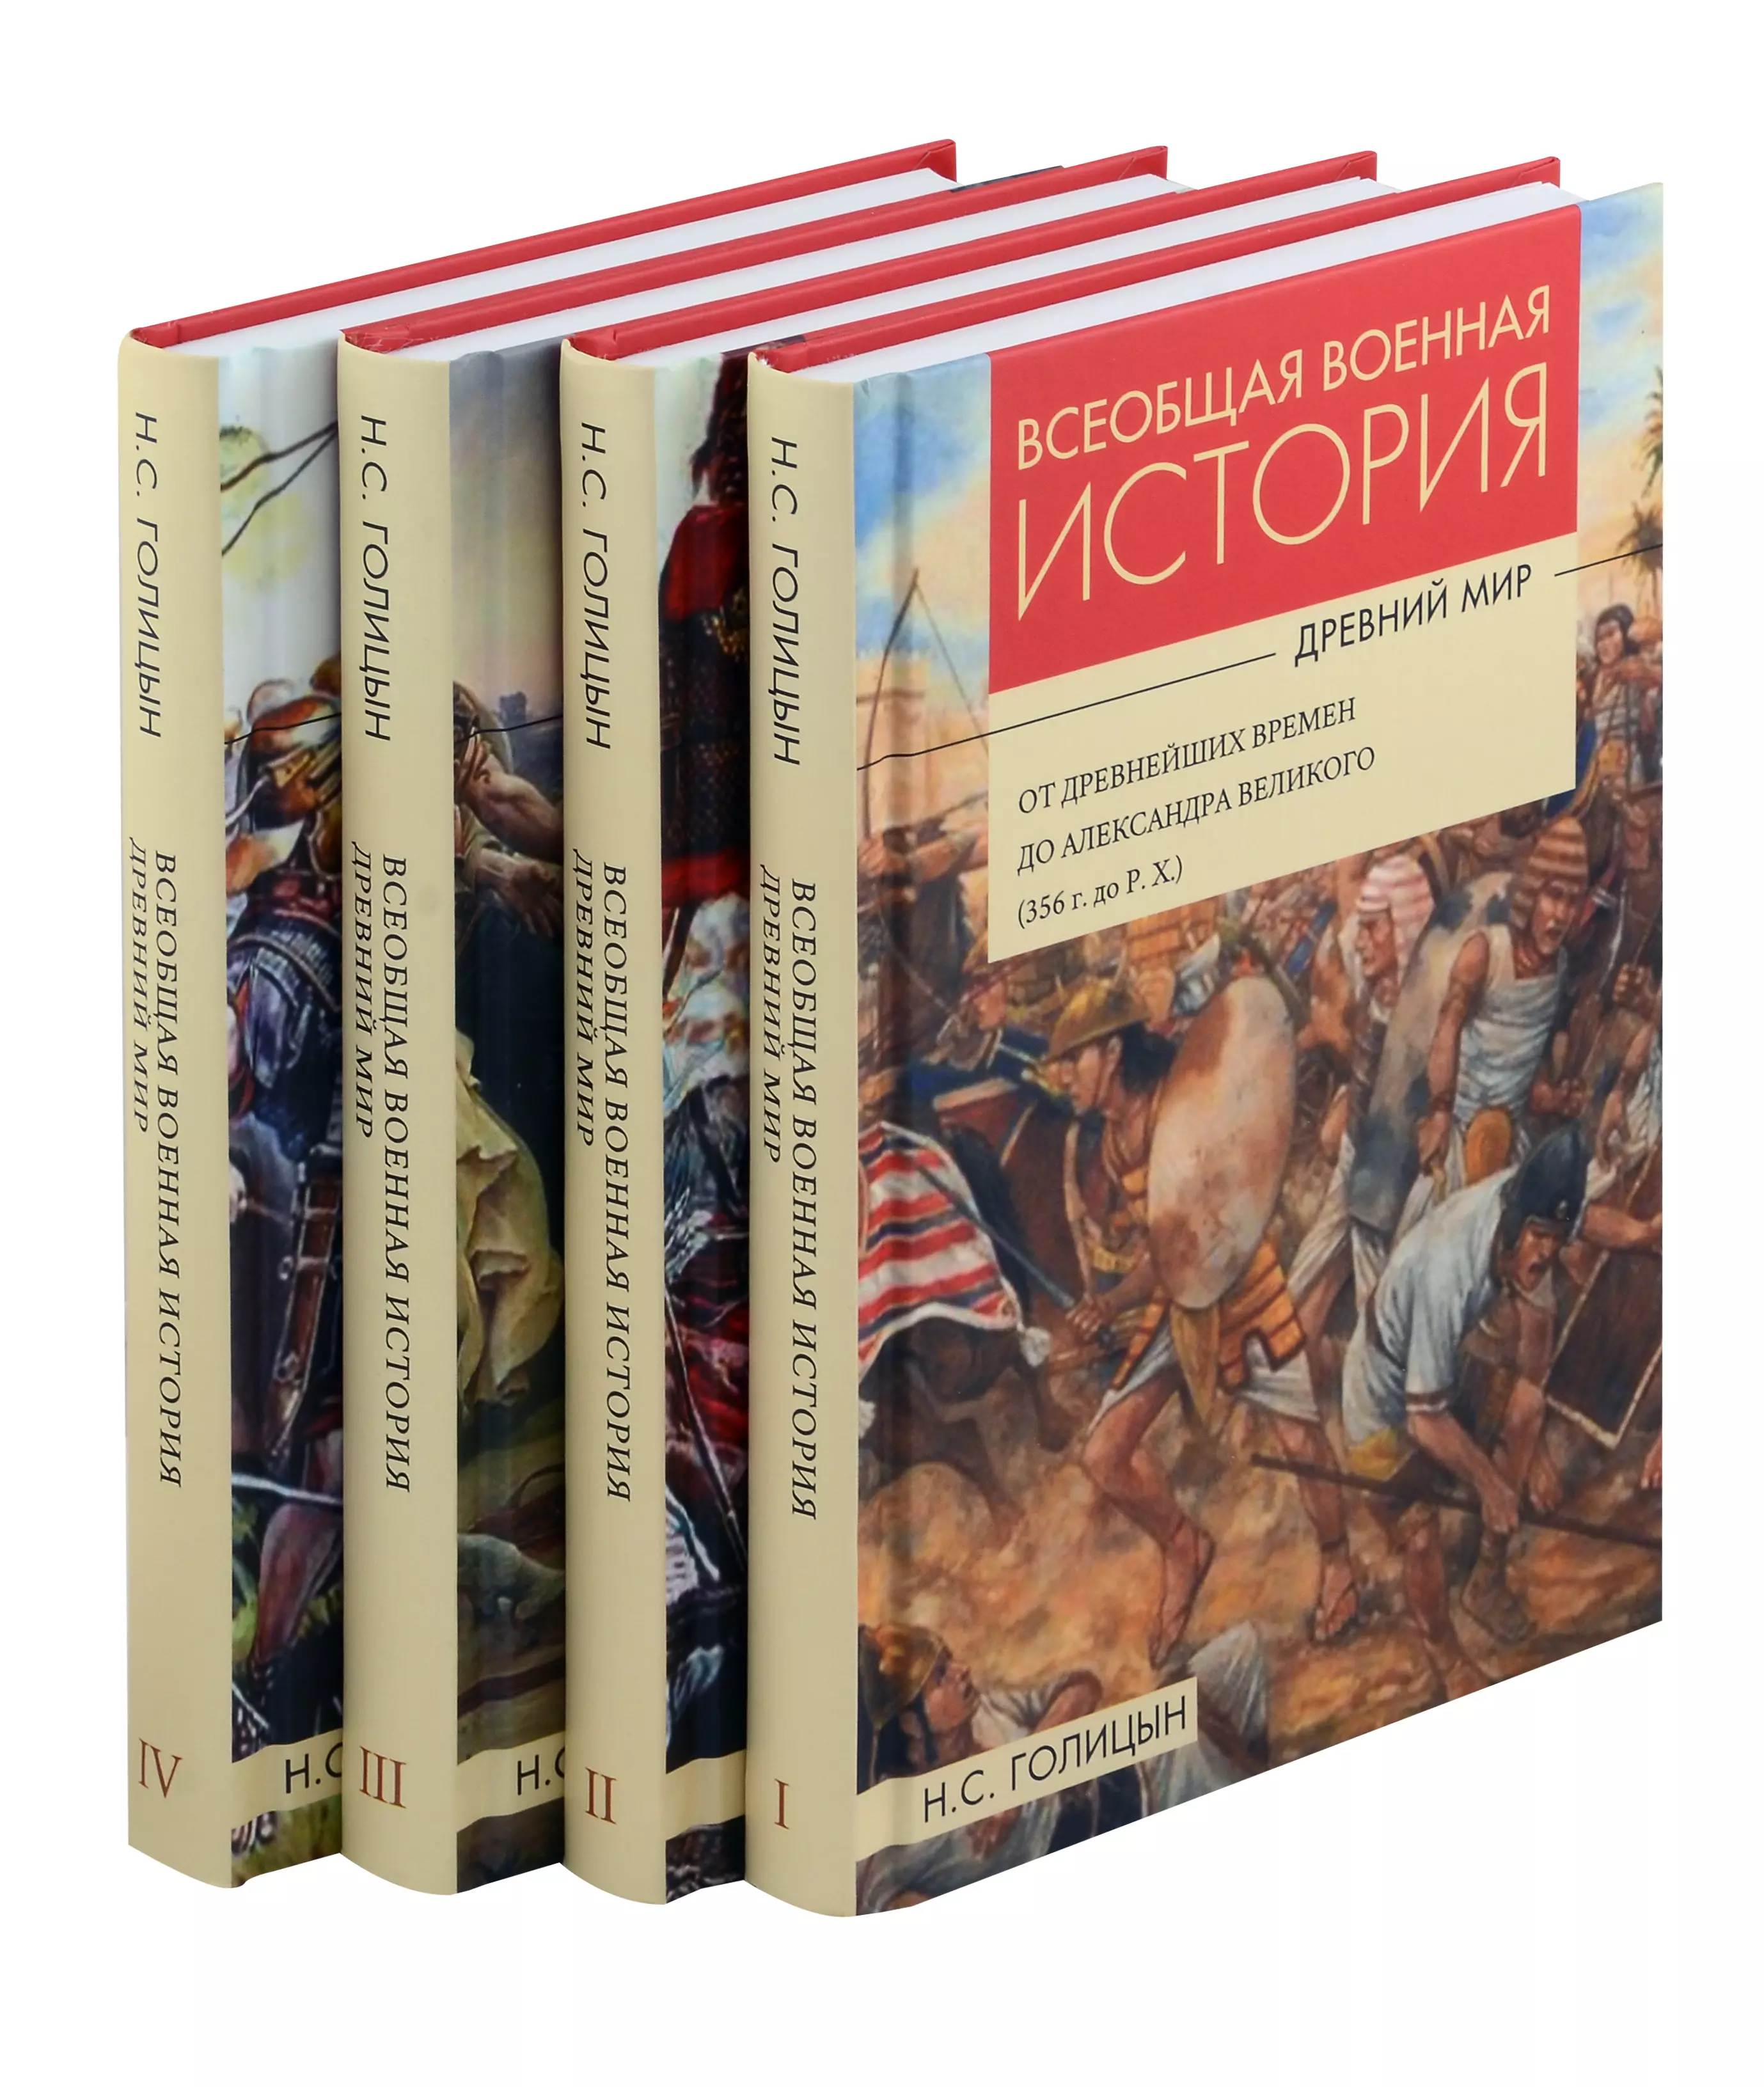 

Комплект: Всеобщая военная история. Древний мир (комплект из 4-х книг)